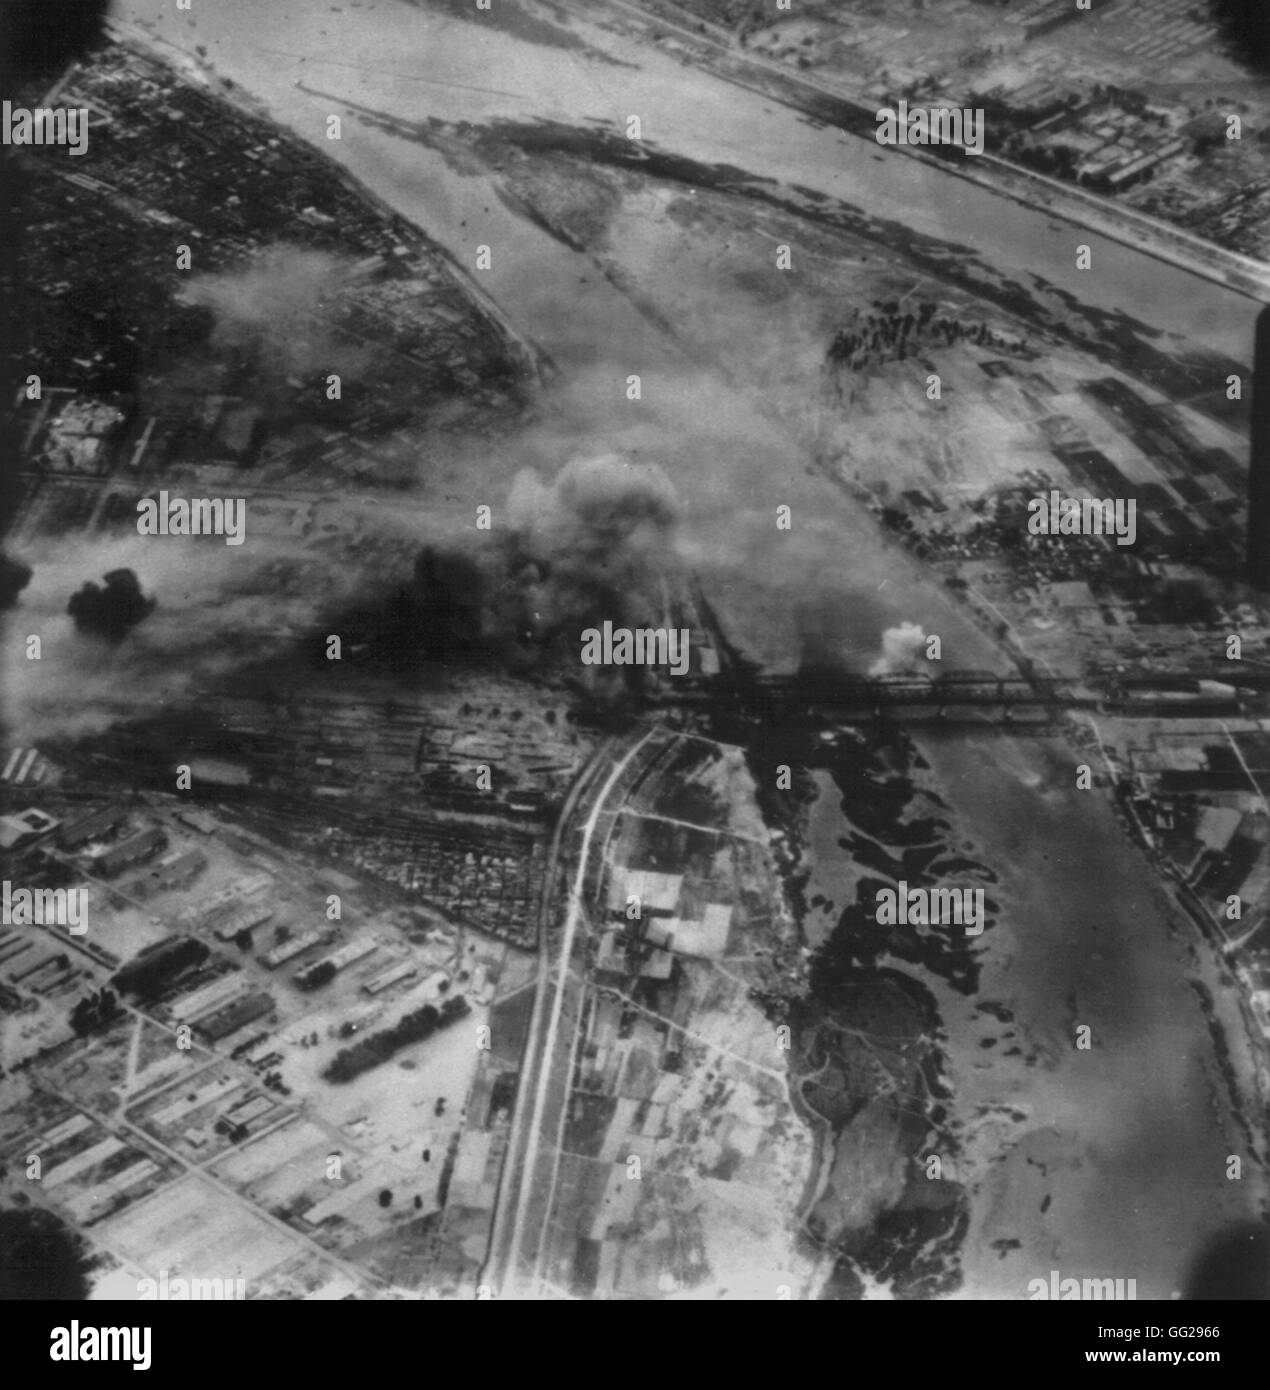 Guerre de Corée, en juillet 1950, Pyongyang. Les ponts et les chemins de fer américains et britanniques ont bombardé par force de déploiement rapide. Juillet 1950 Guerre de Corée. Archives nationales - Washington Banque D'Images